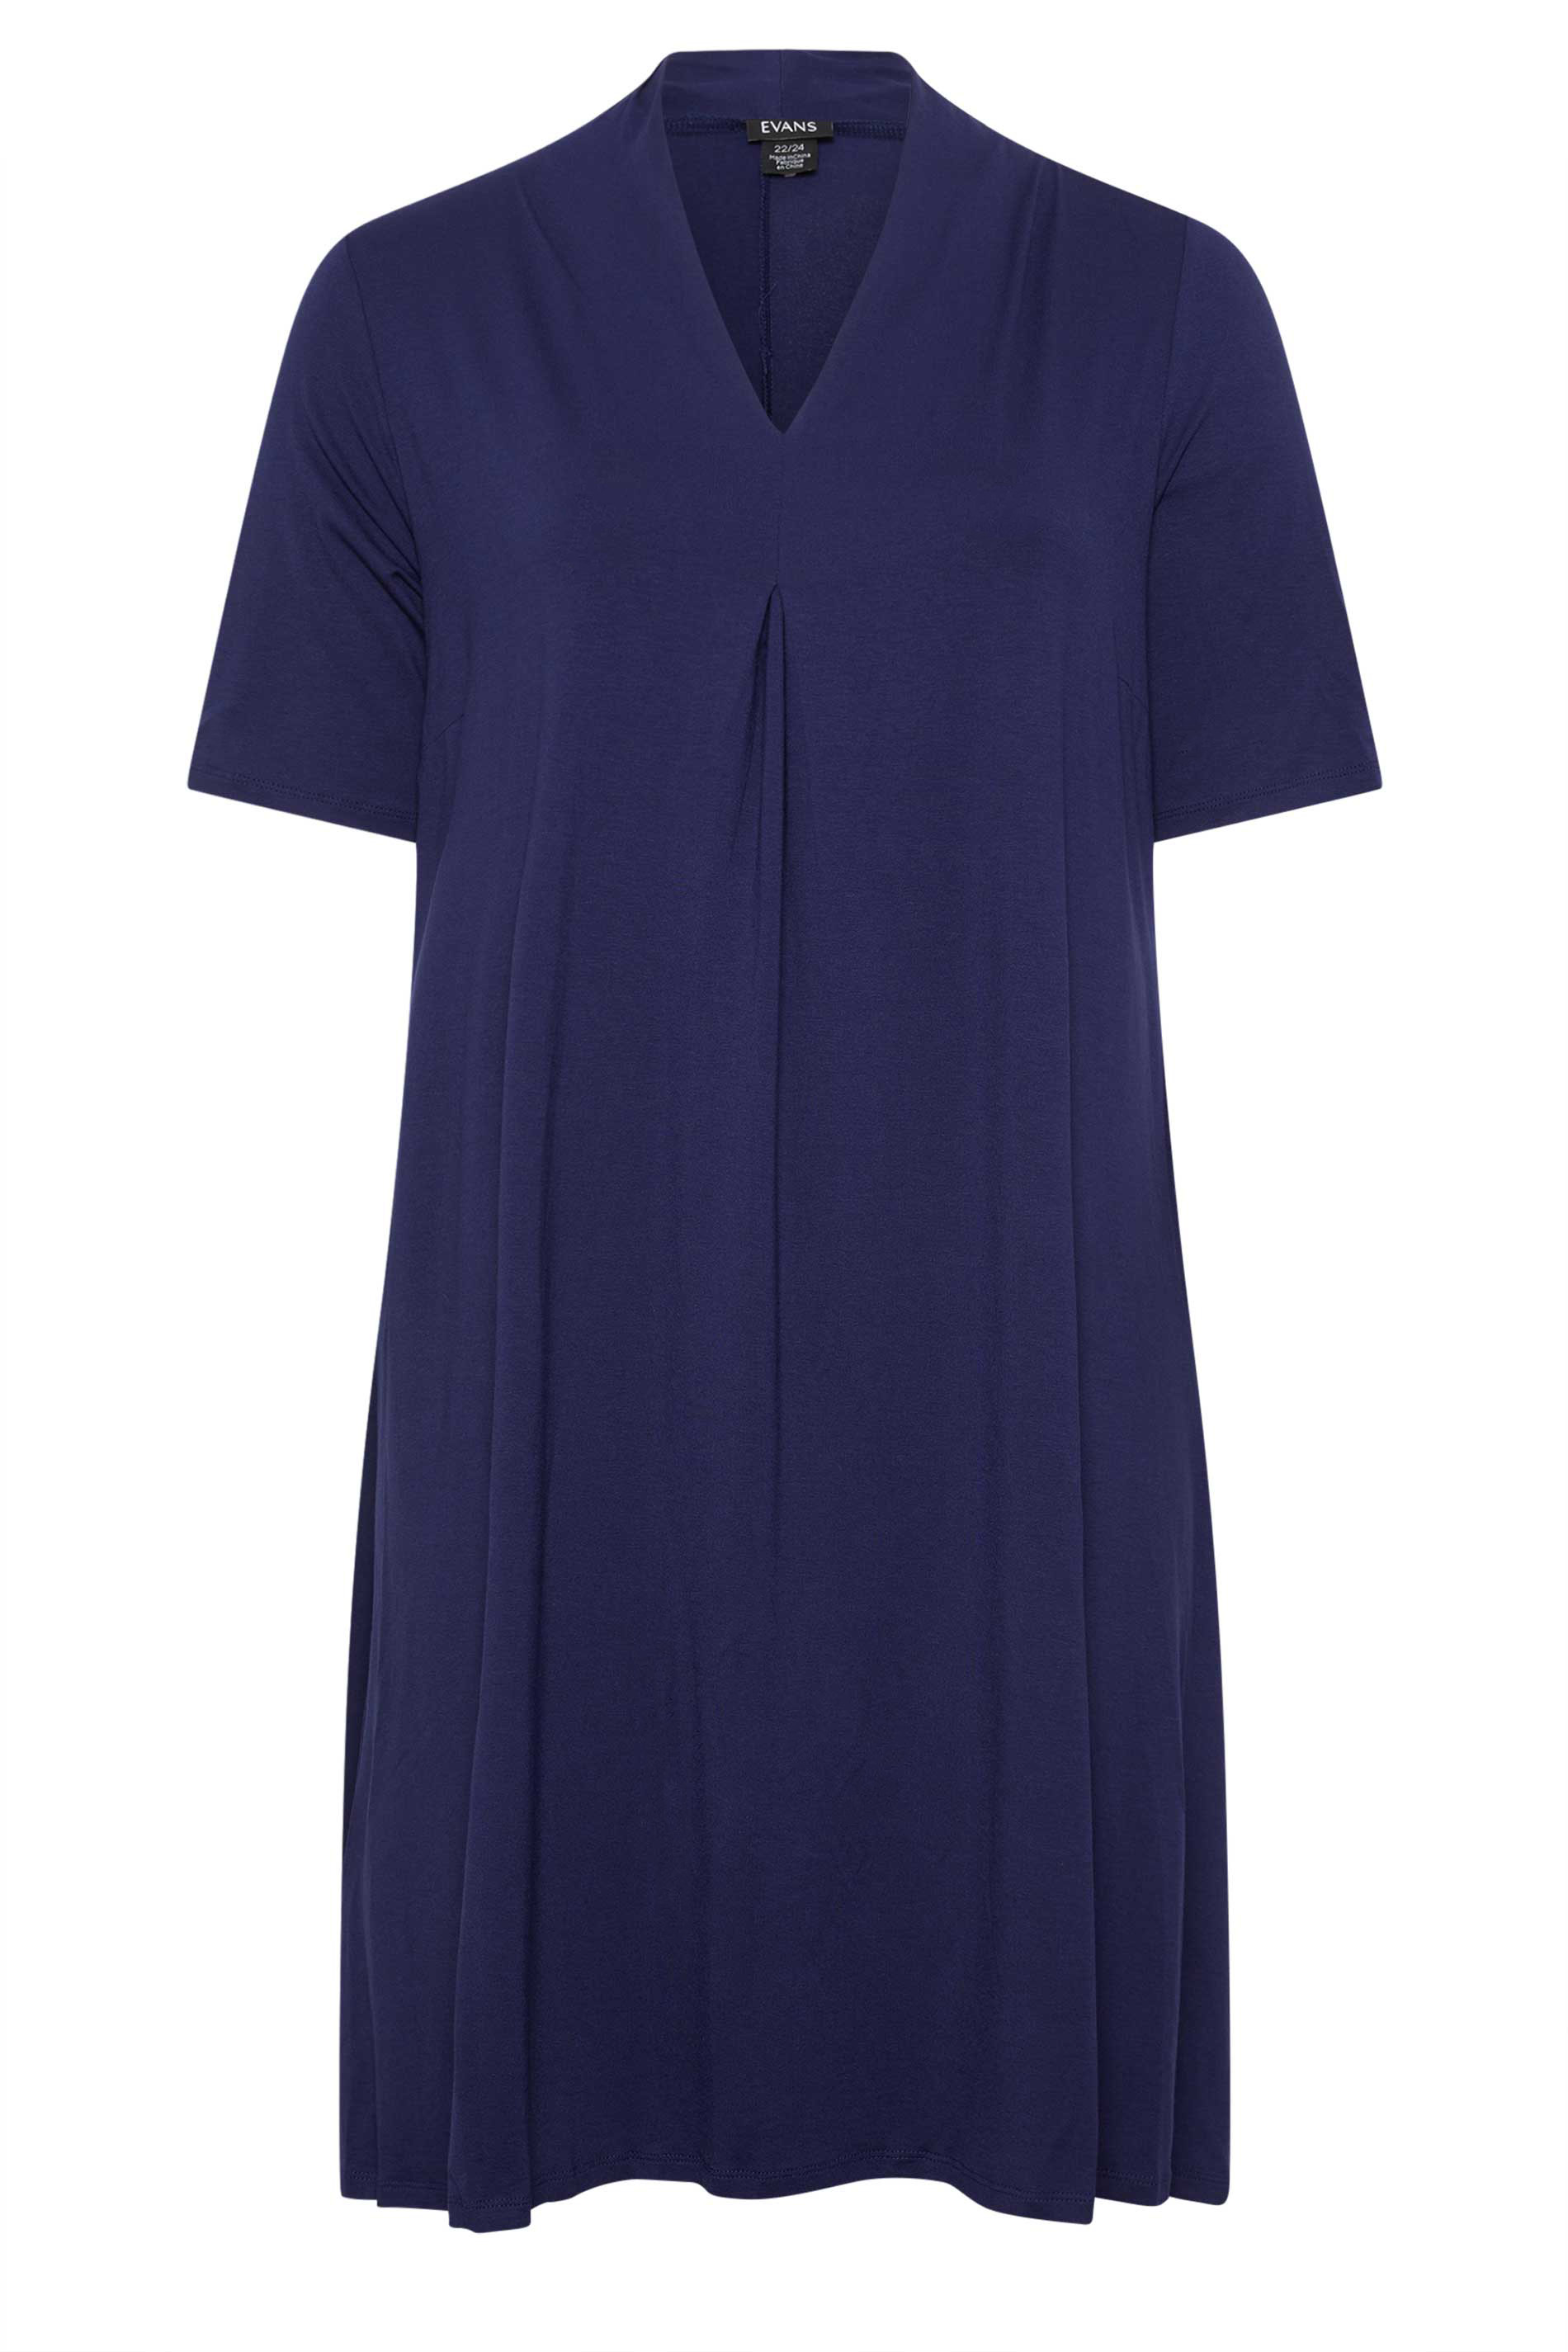 Evans Blue V-Neck Dress 1